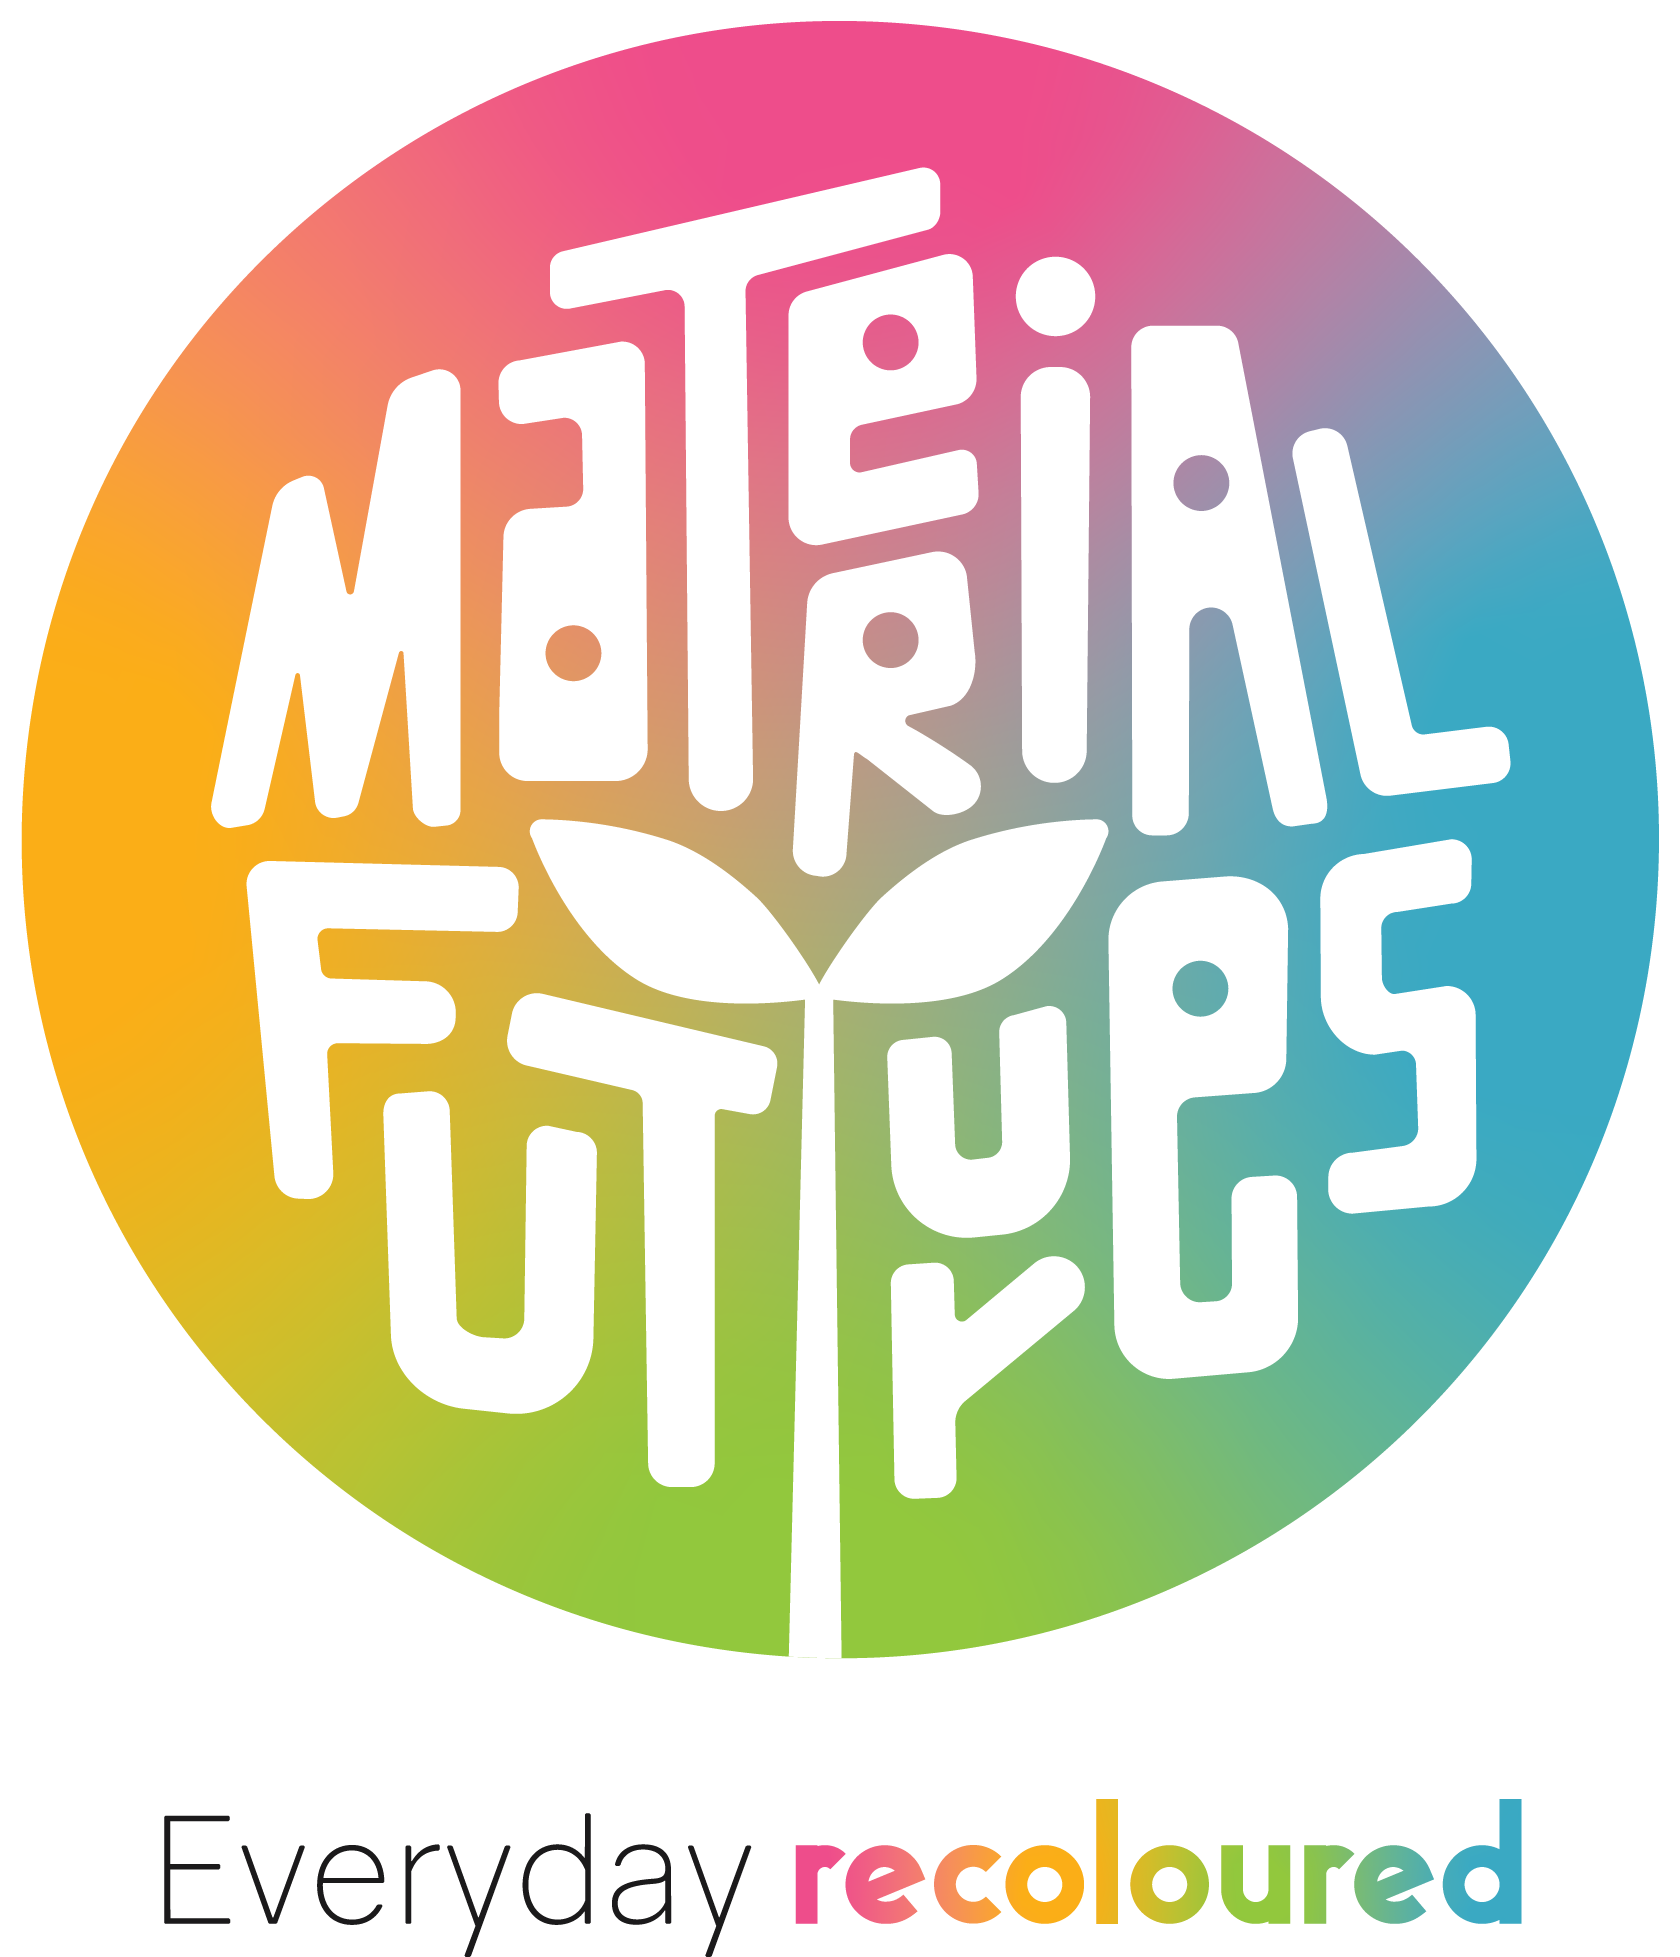 Material Futures Lab